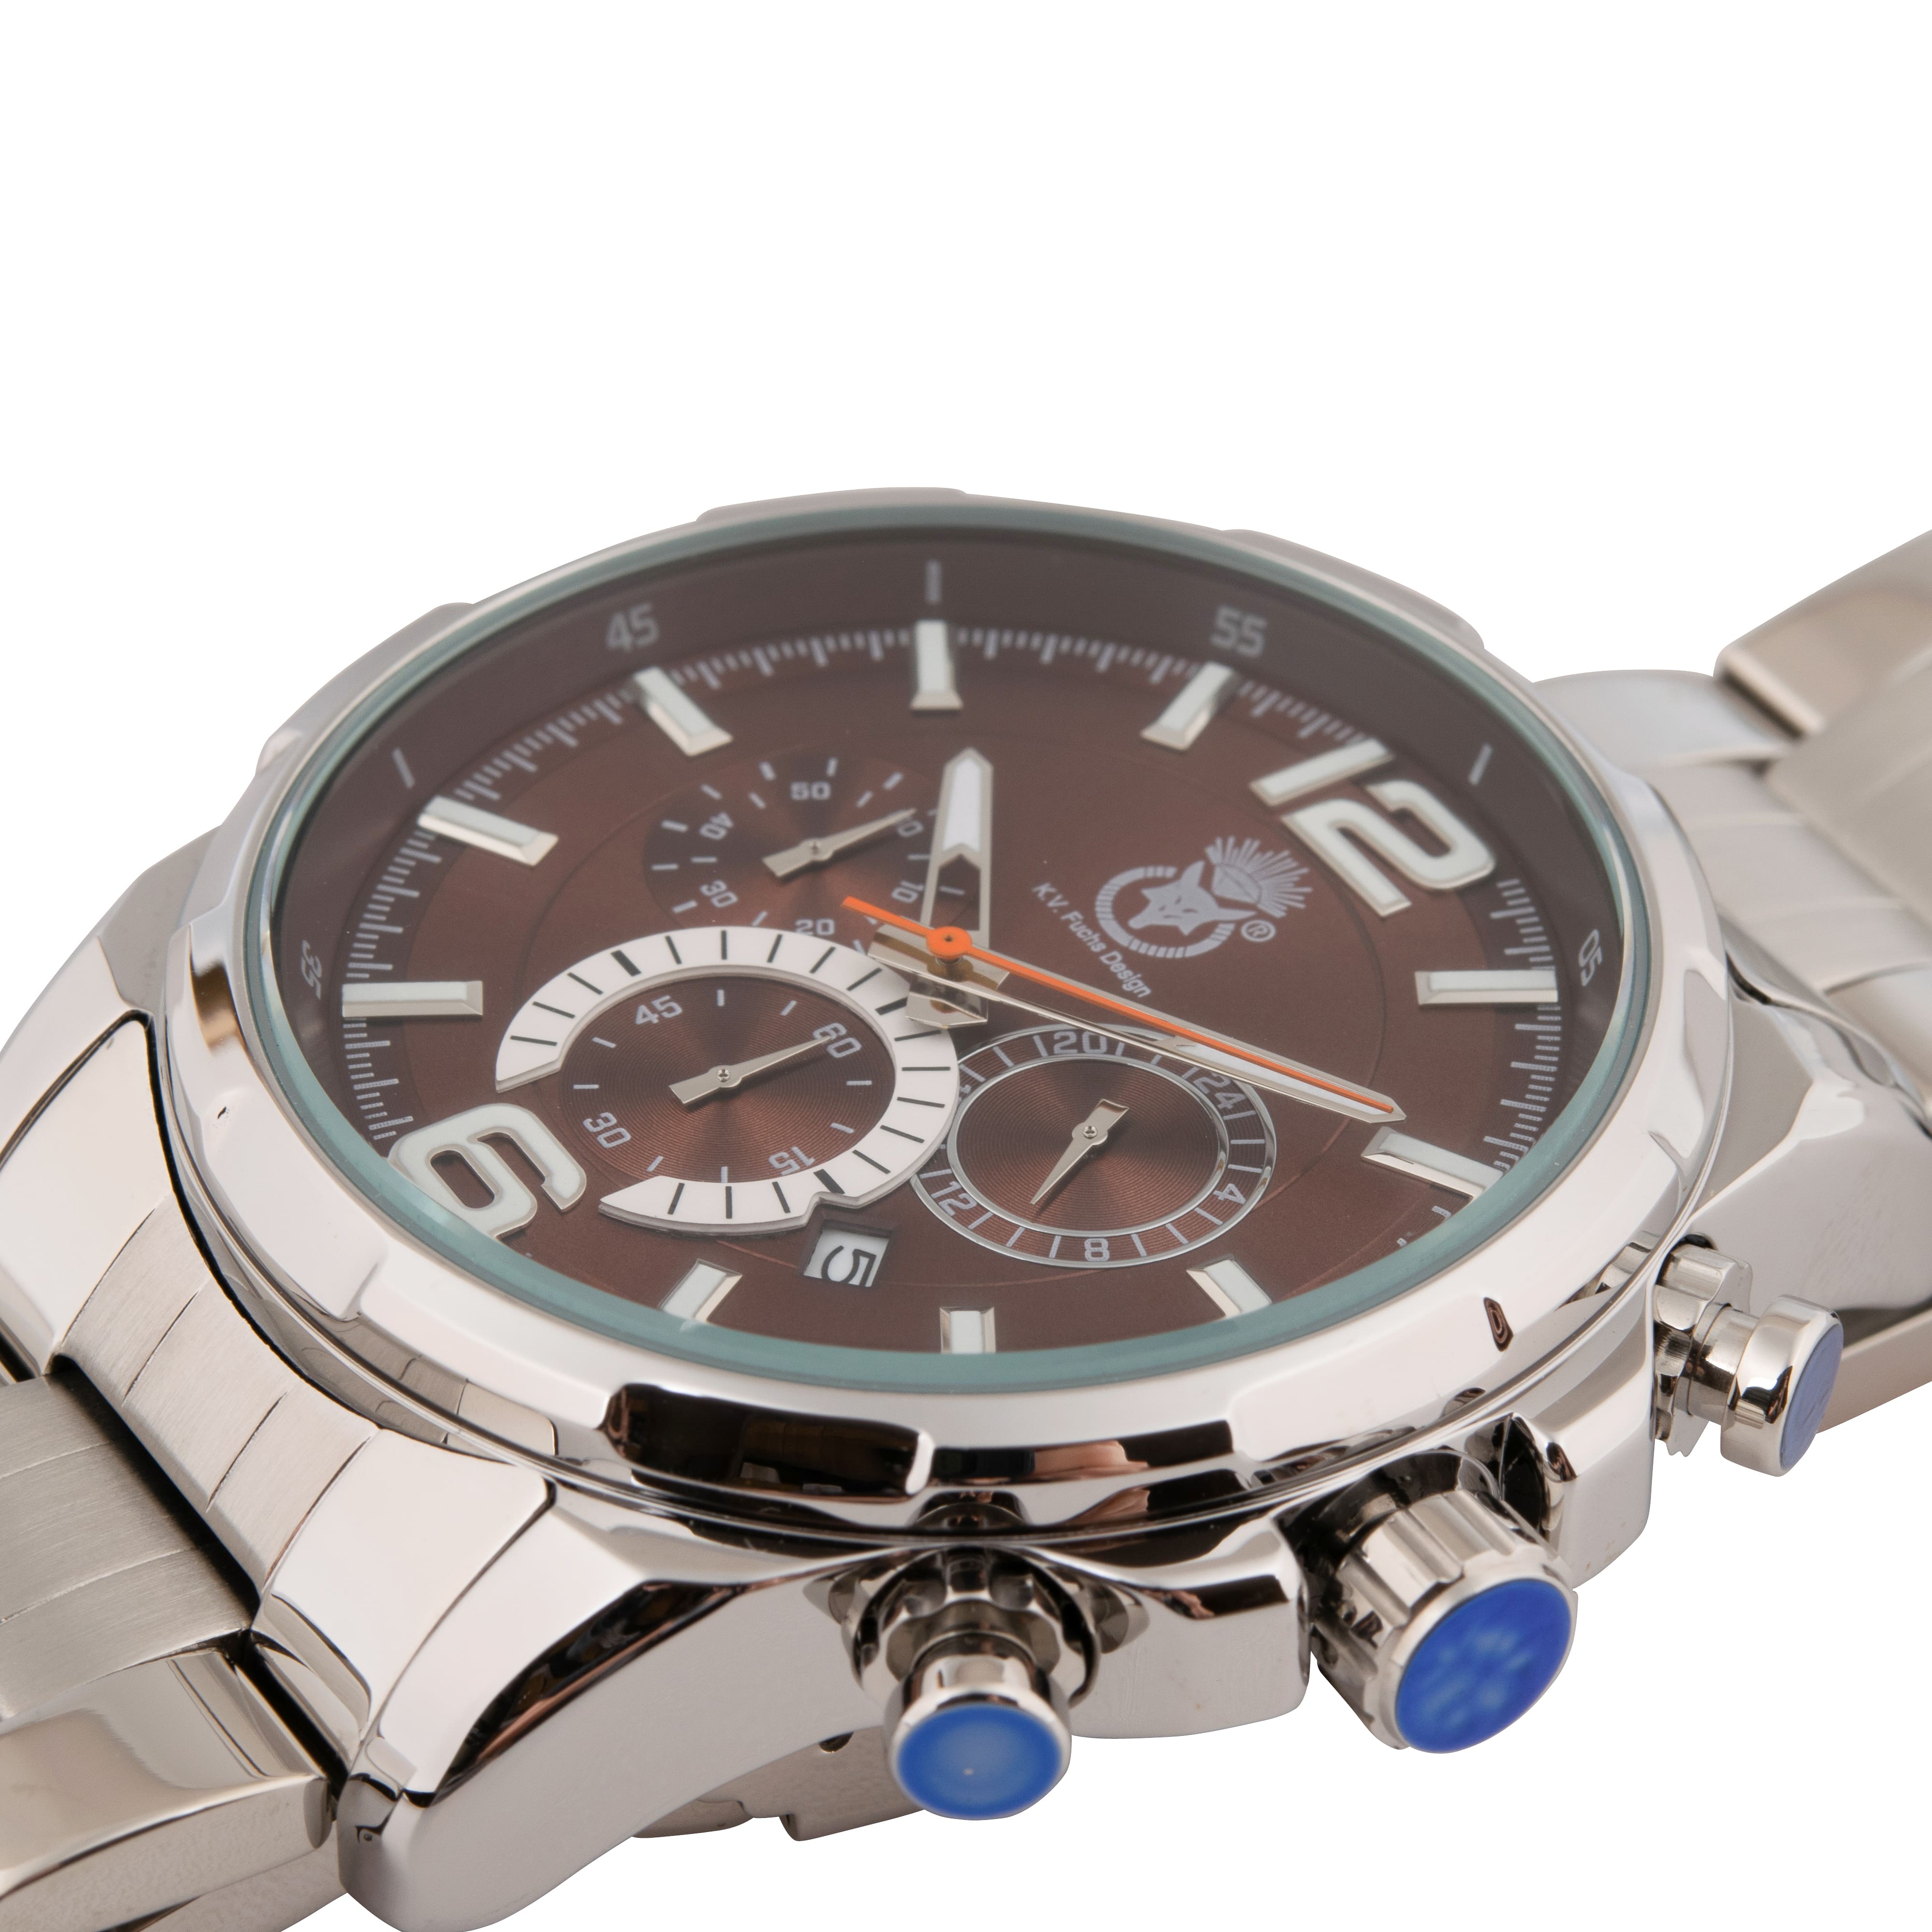 K.V. Fuchs Design Herren Quarzuhr analog Armbanduhr mit Faltschließe in braun, silber mit Edelstahlarmband in silber »U-99-02-Braun-Silber«